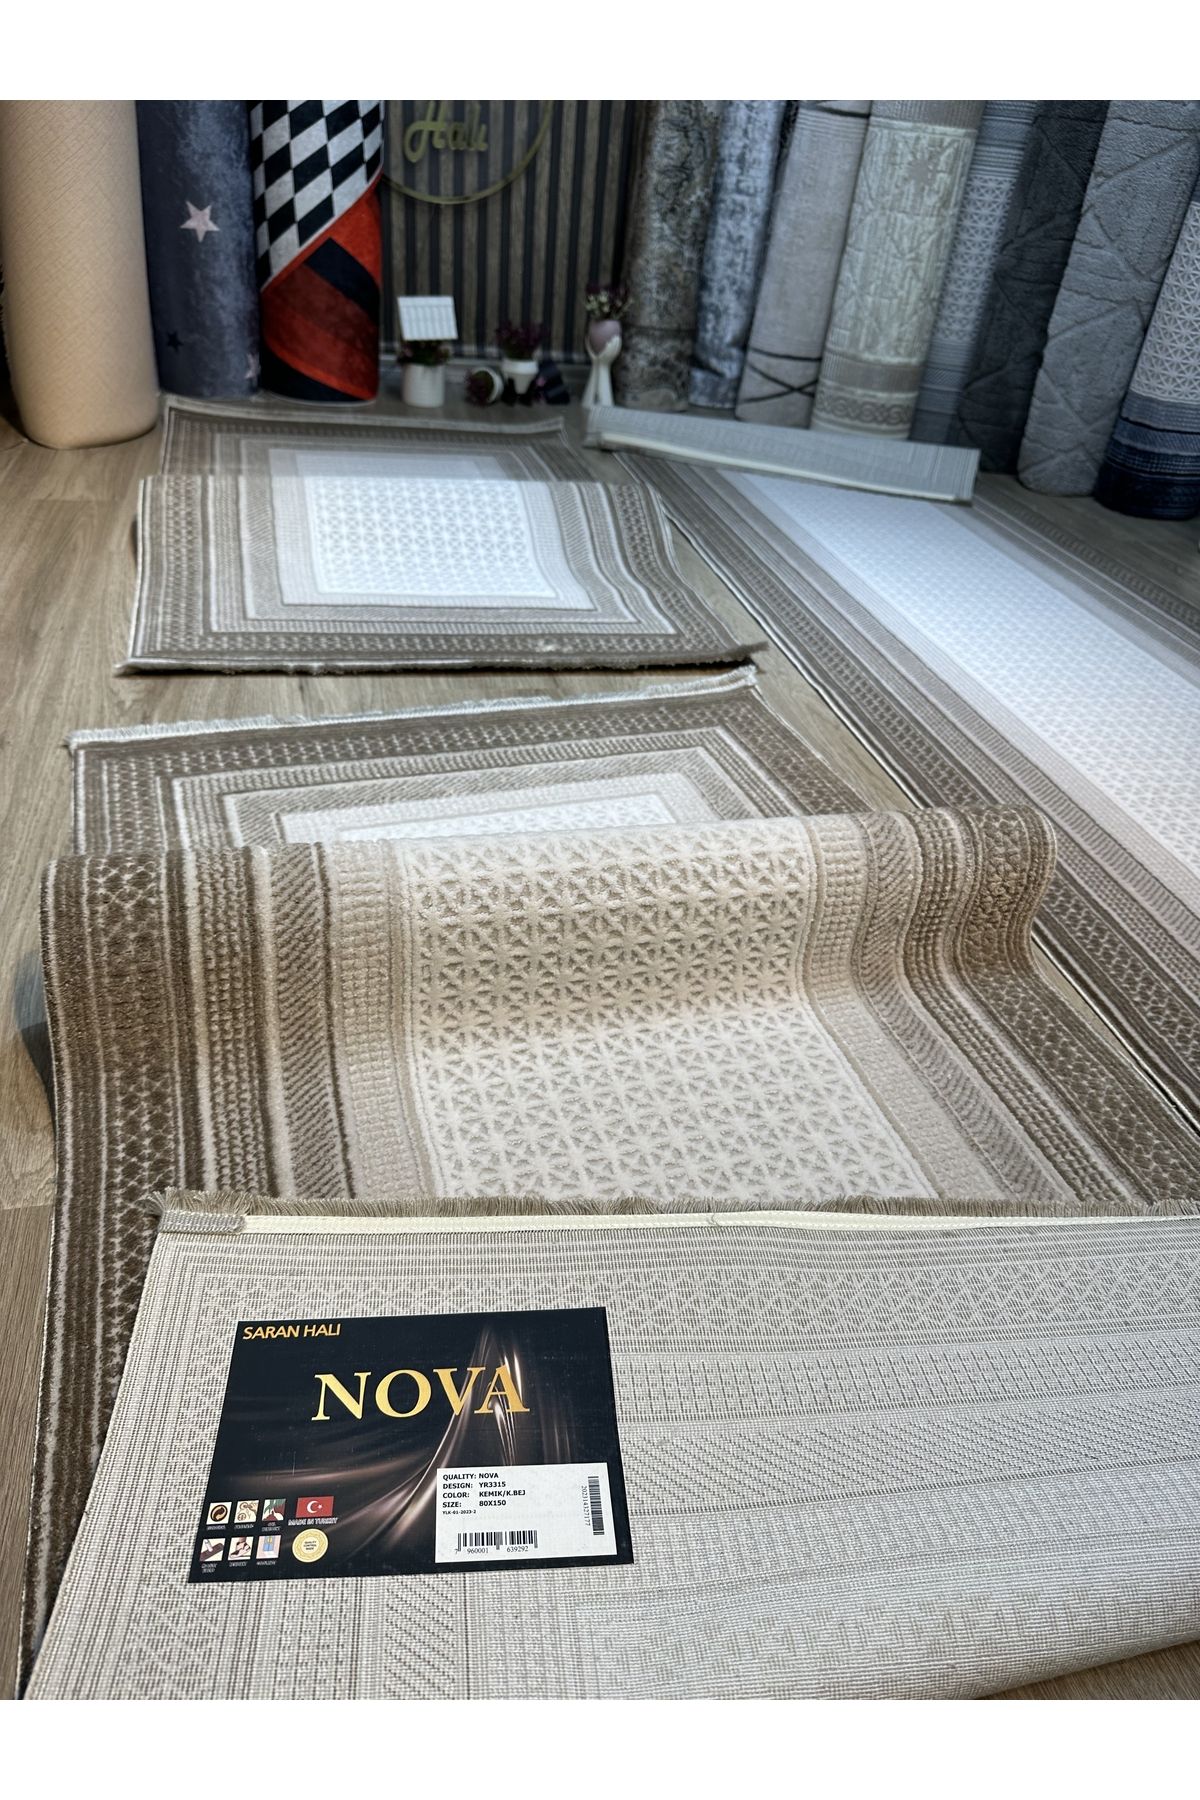 Nova triko akrilik üçlü yatak odası takımı kahverengi